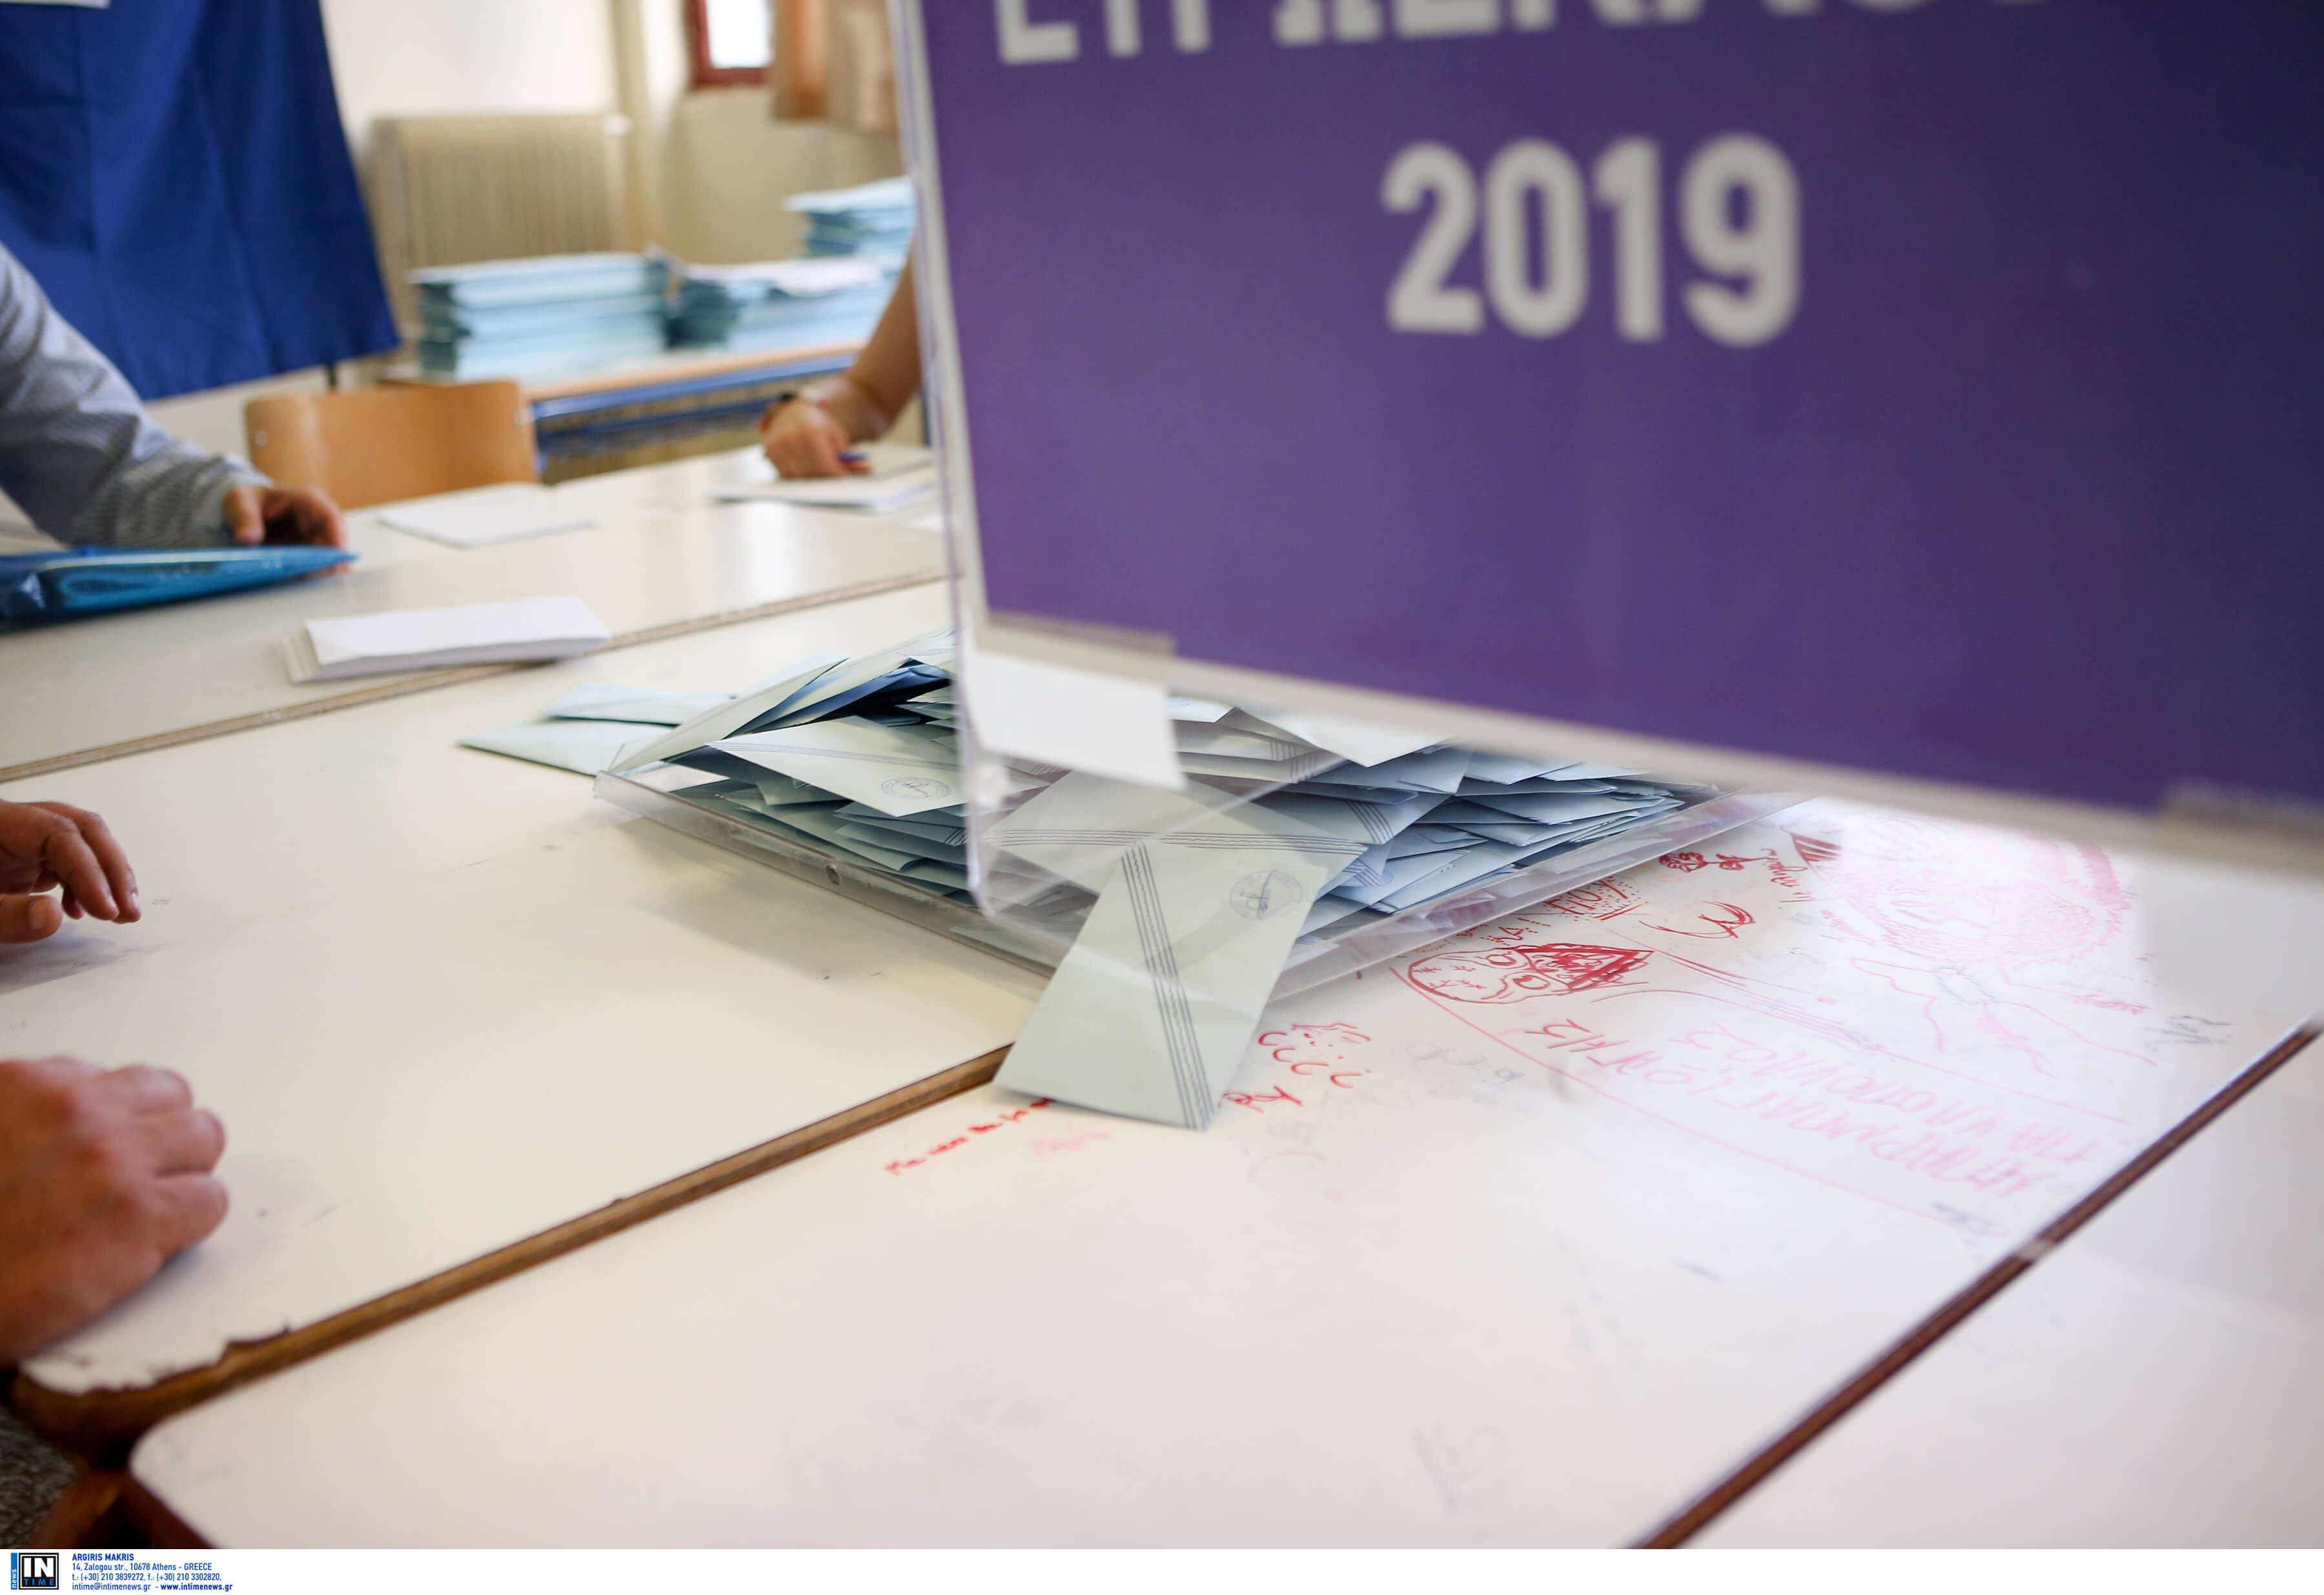 Εκλογές 2019: Οι υποψήφιοι βουλευτές Α’ Ανατολικής Αττικής – Αποτελέσματα εκλογών, ονόματα και κόμματα